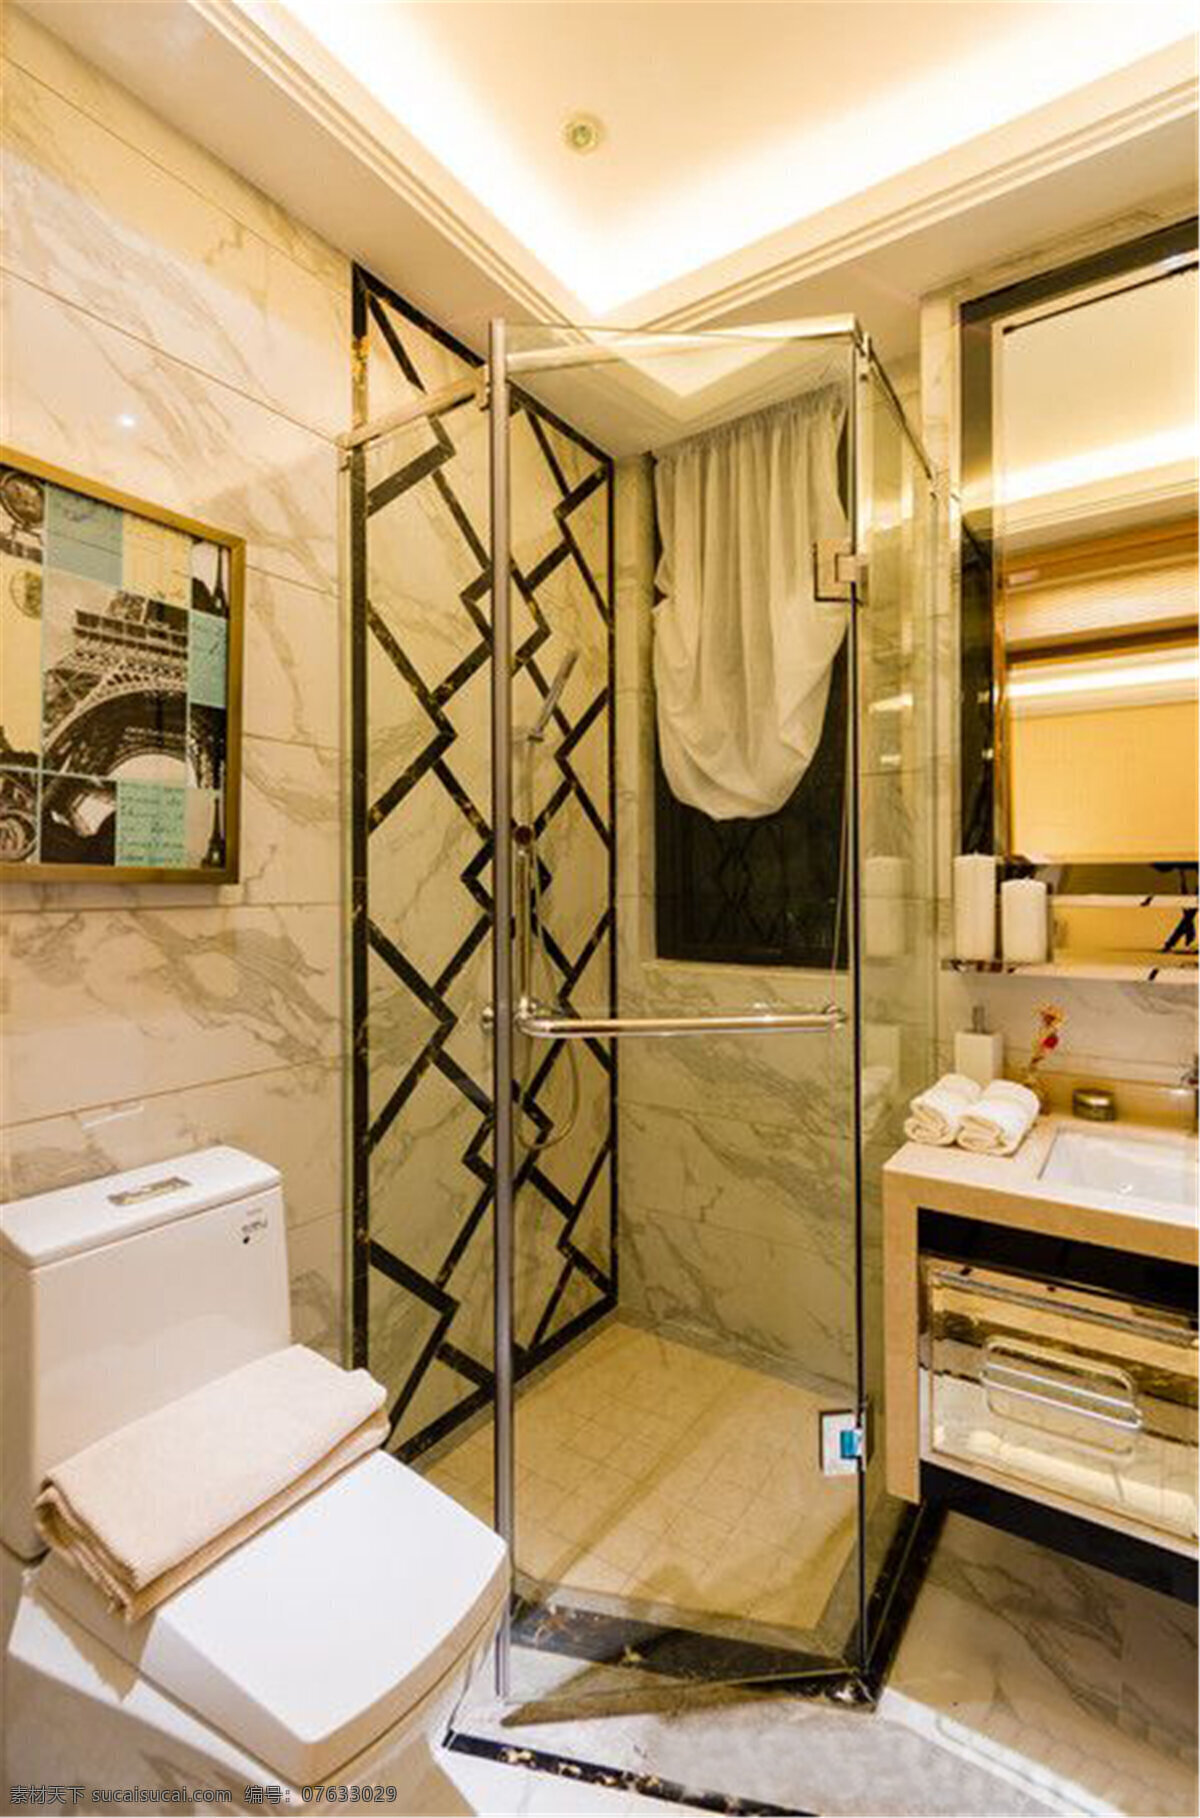 现代 时尚 卫生间 浴室 背景 墙 设计图 家居 家居生活 室内设计 装修 室内 家具 装修设计 环境设计 效果图 背景墙